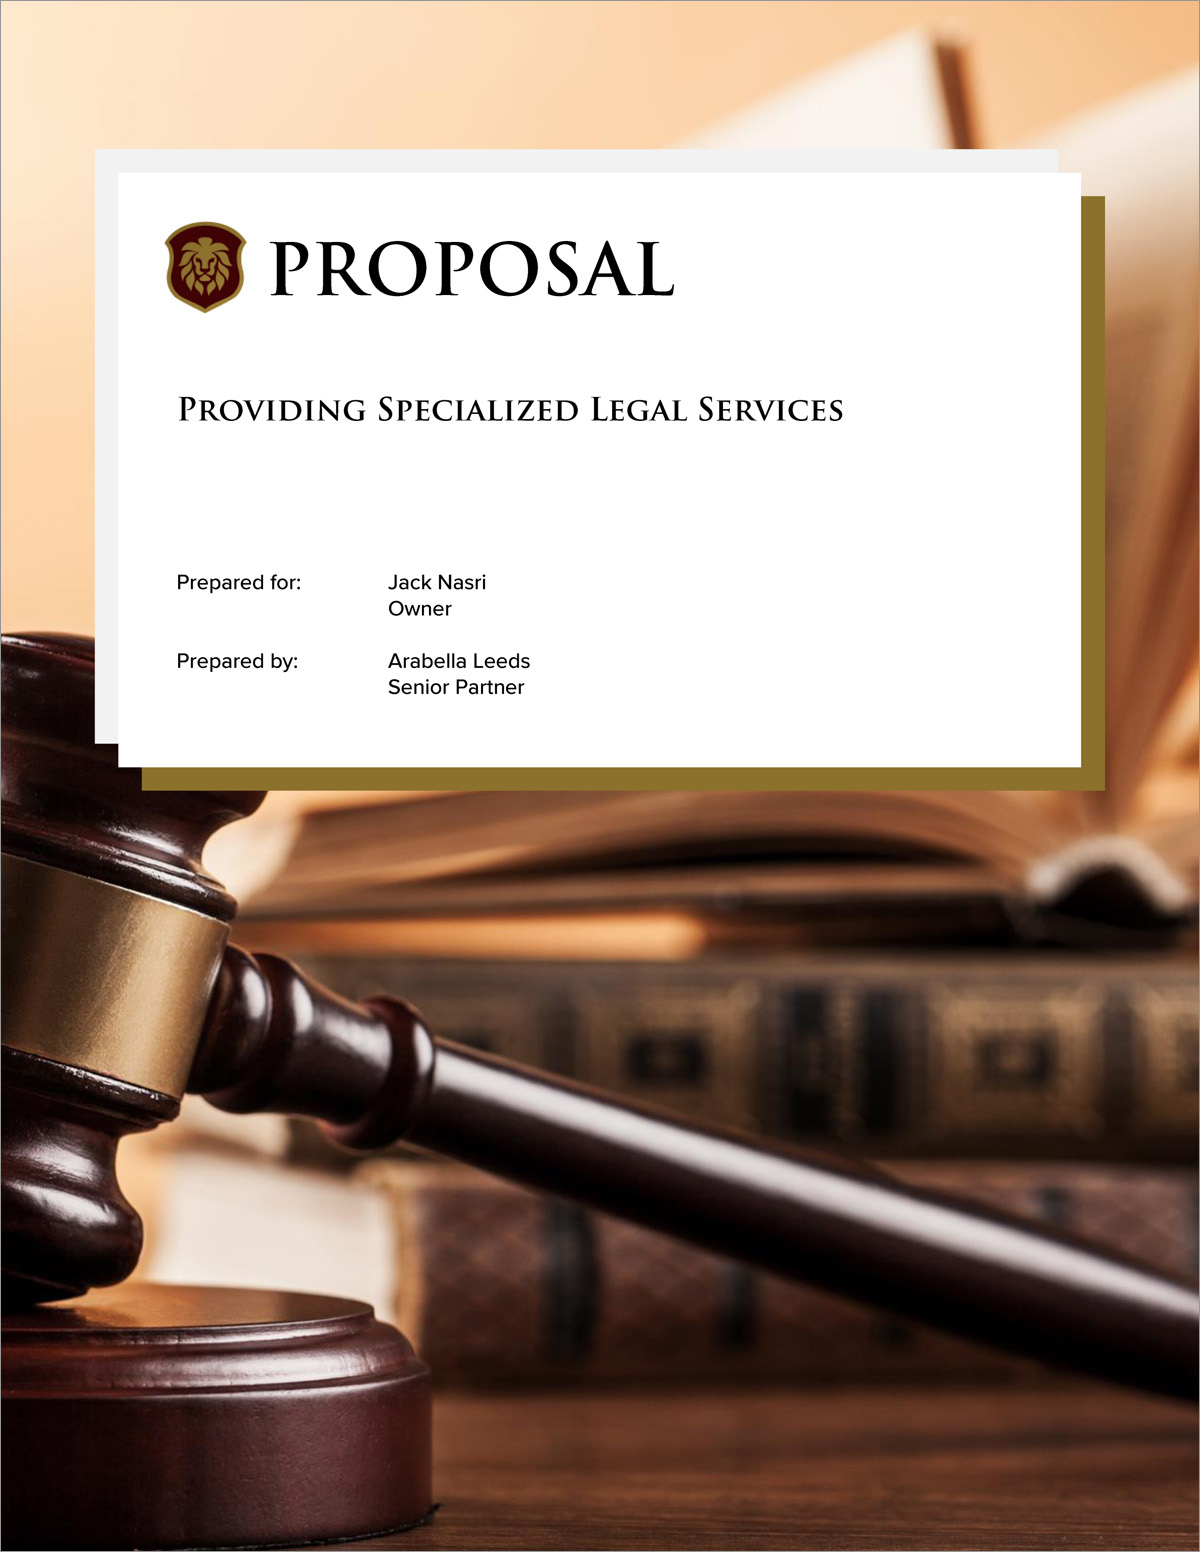 Legal Services In Pasadena Ca